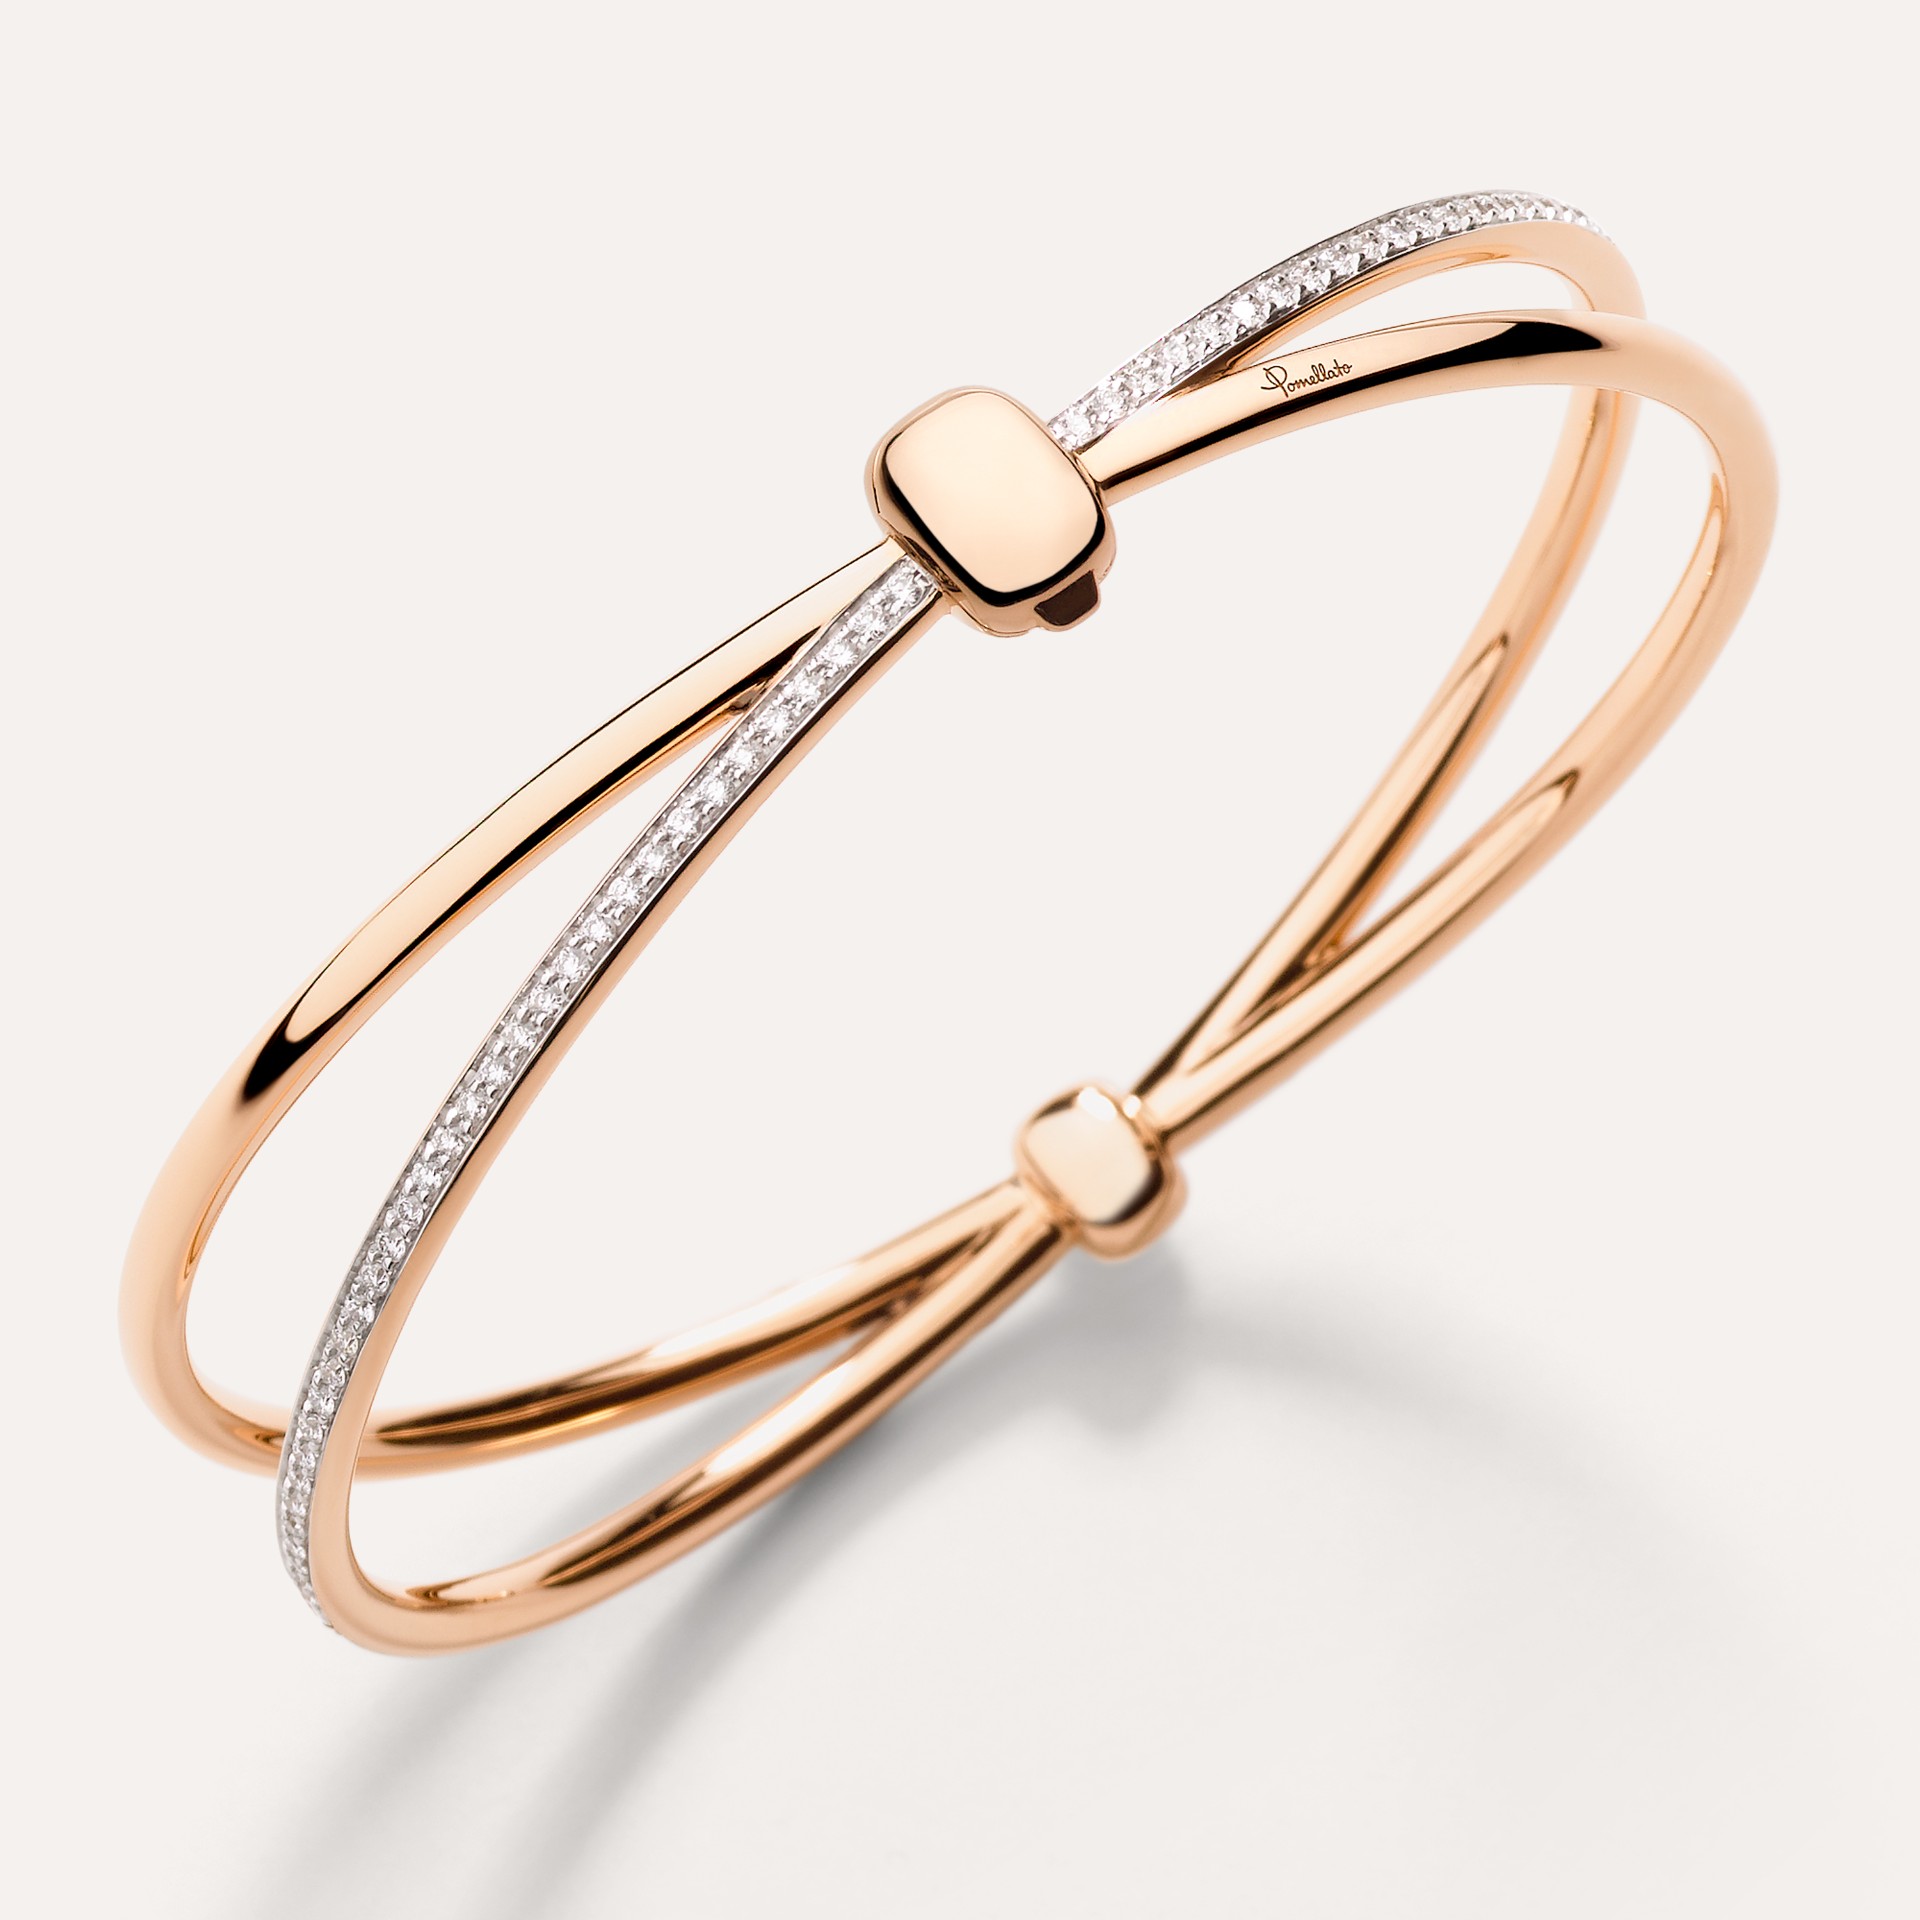 Rose Gold Bracelet for Women - Modern Design with 18K Rose Gold Plating -  Loopy Crystal and Rose Gold Bracelet by Blingvine